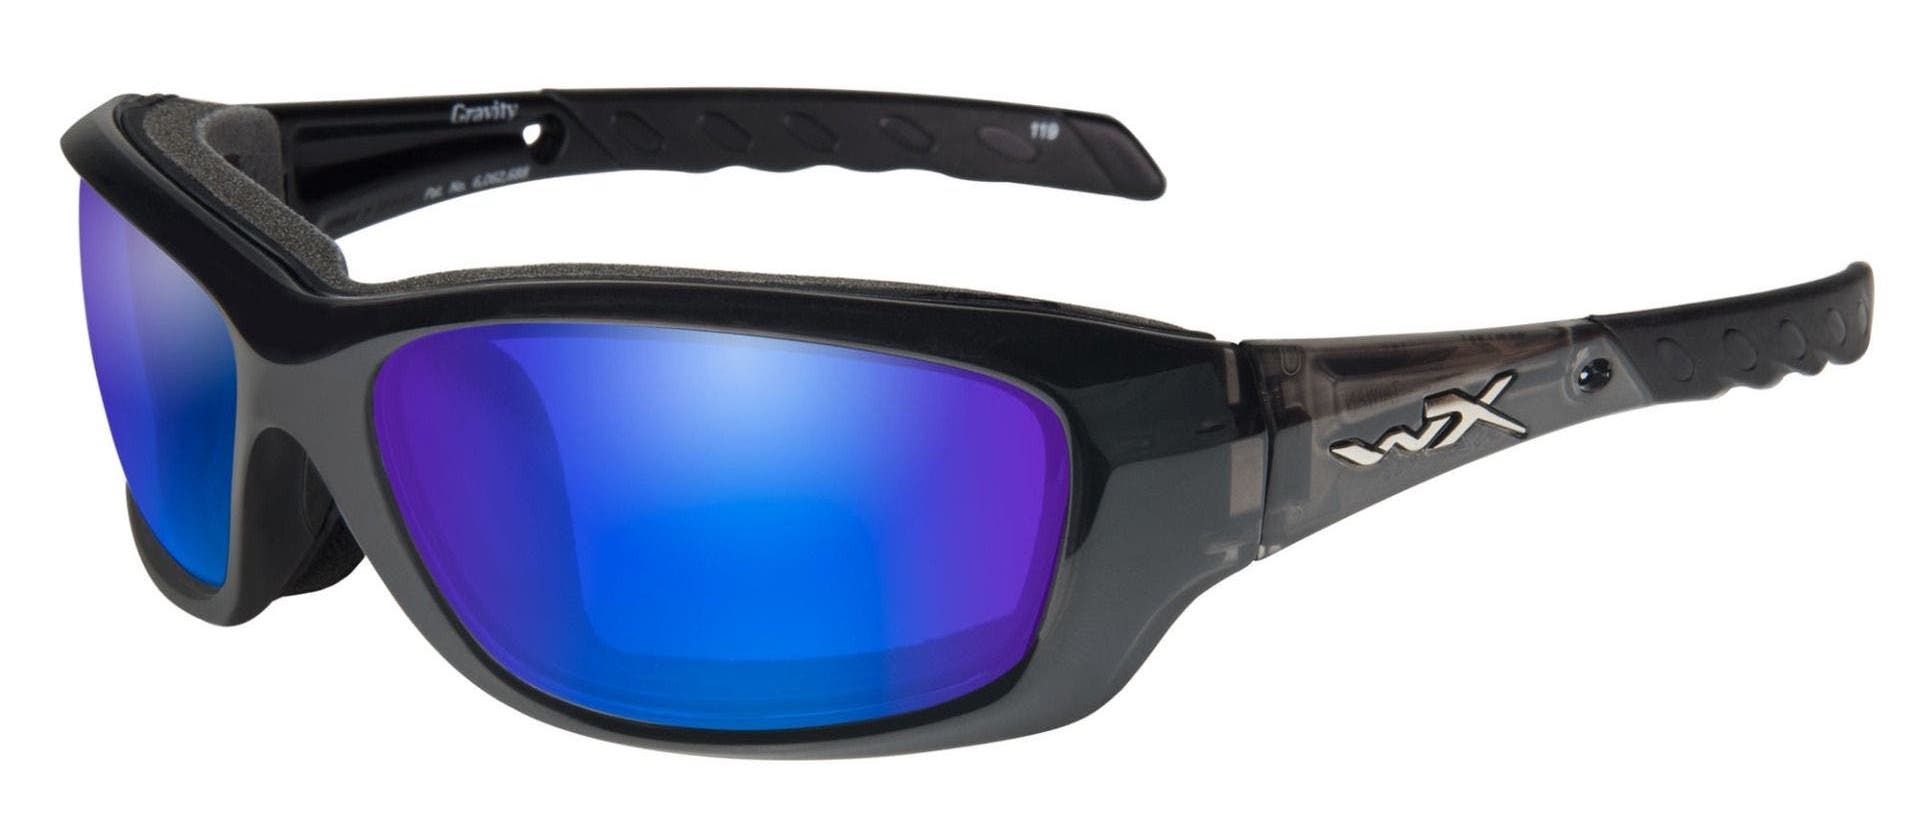 Wiley X Gravity polarized prescription sunglasses in black with blue mirror lenses.